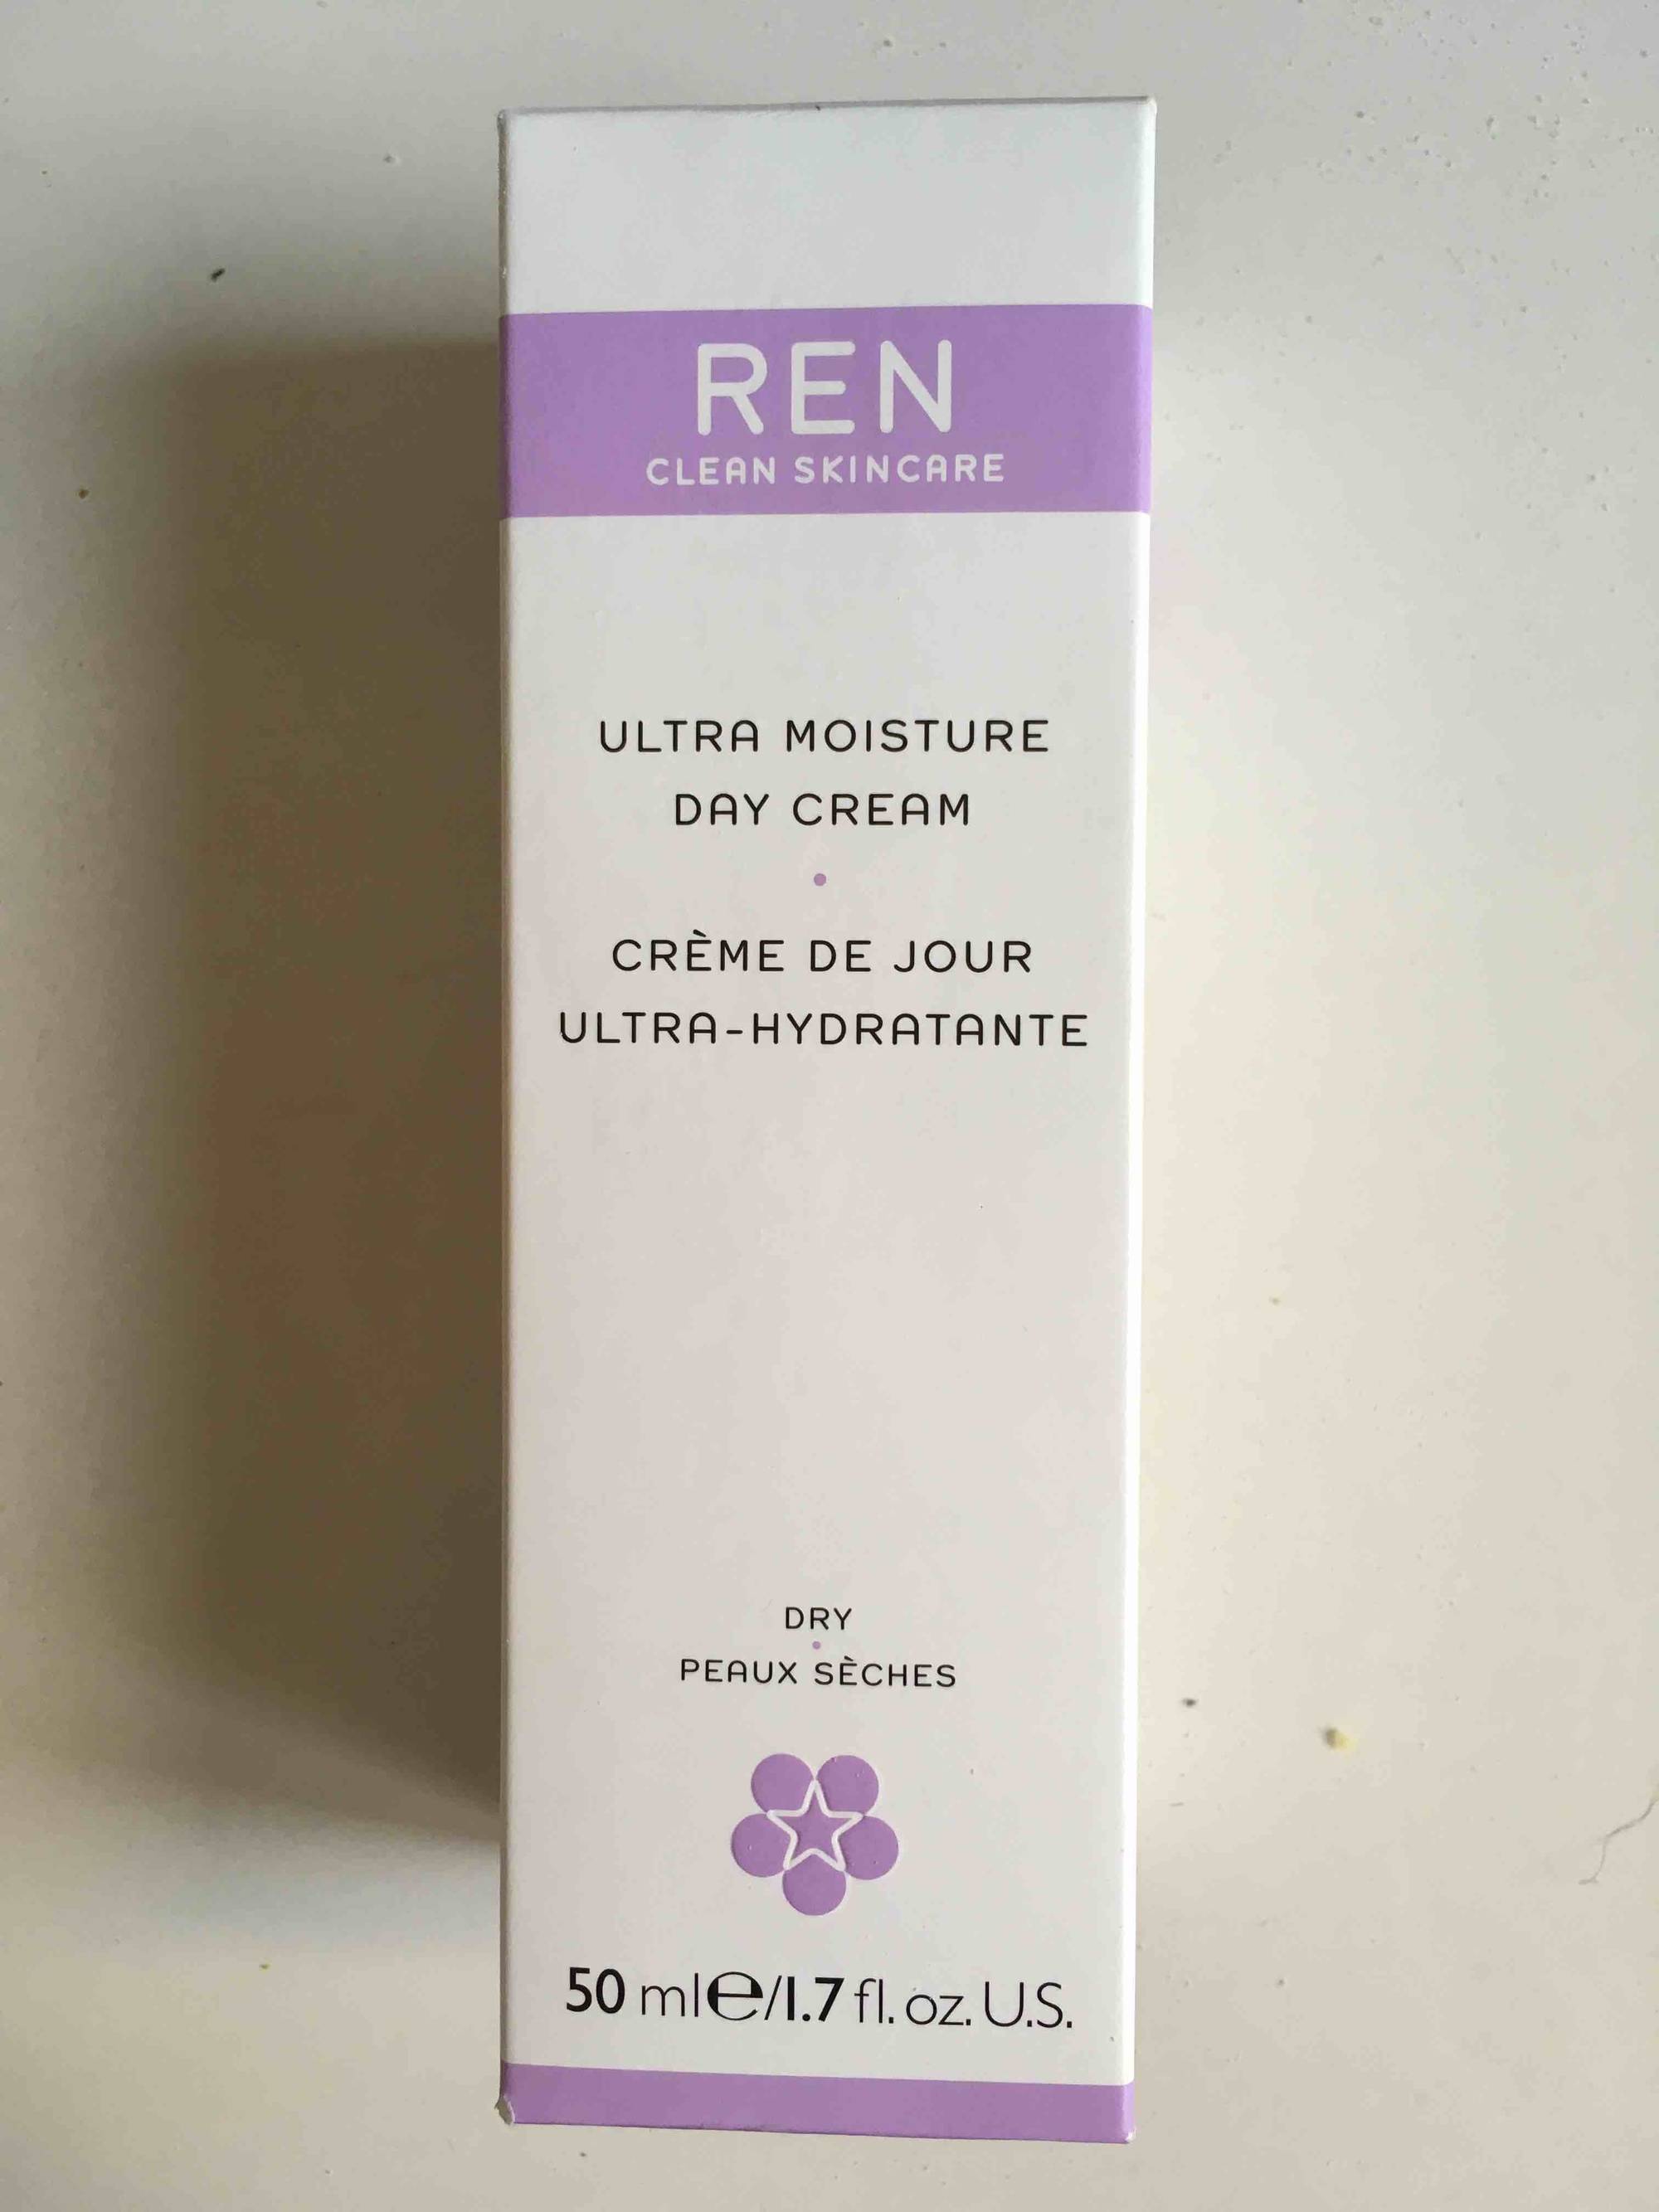 REN CLEAN SKINCARE - Crème de jour ultra-hydratante